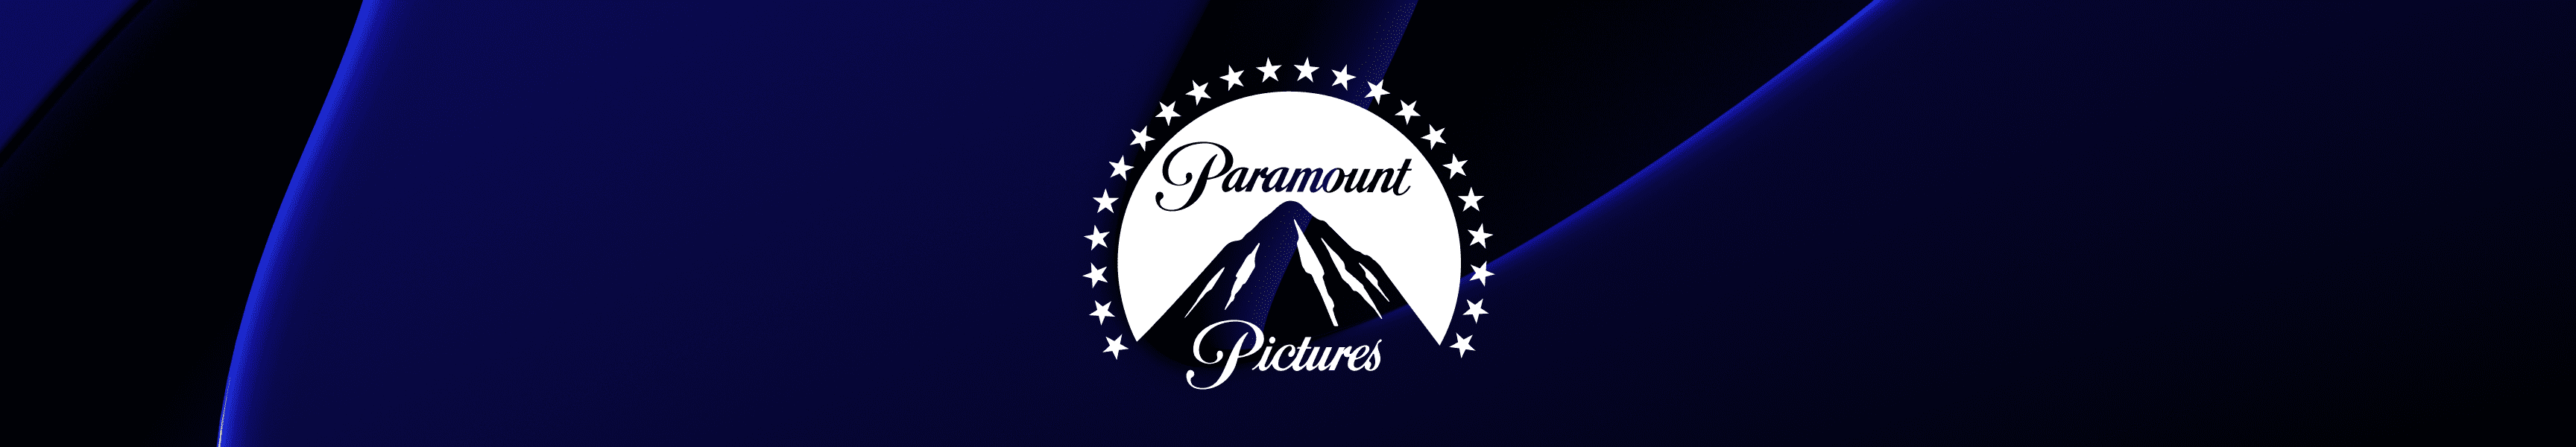 Paramount Pictures Bar Zubehör